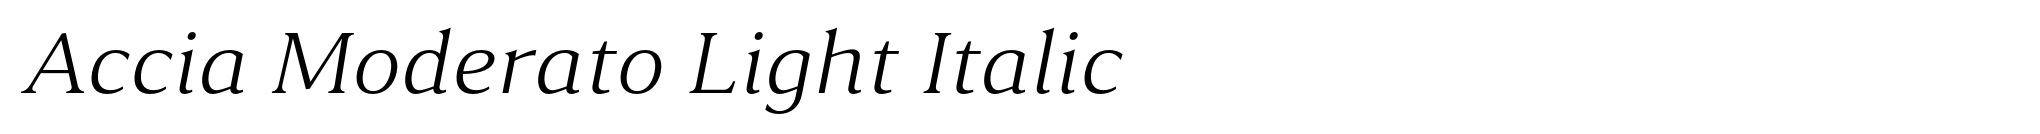 Accia Moderato Light Italic image